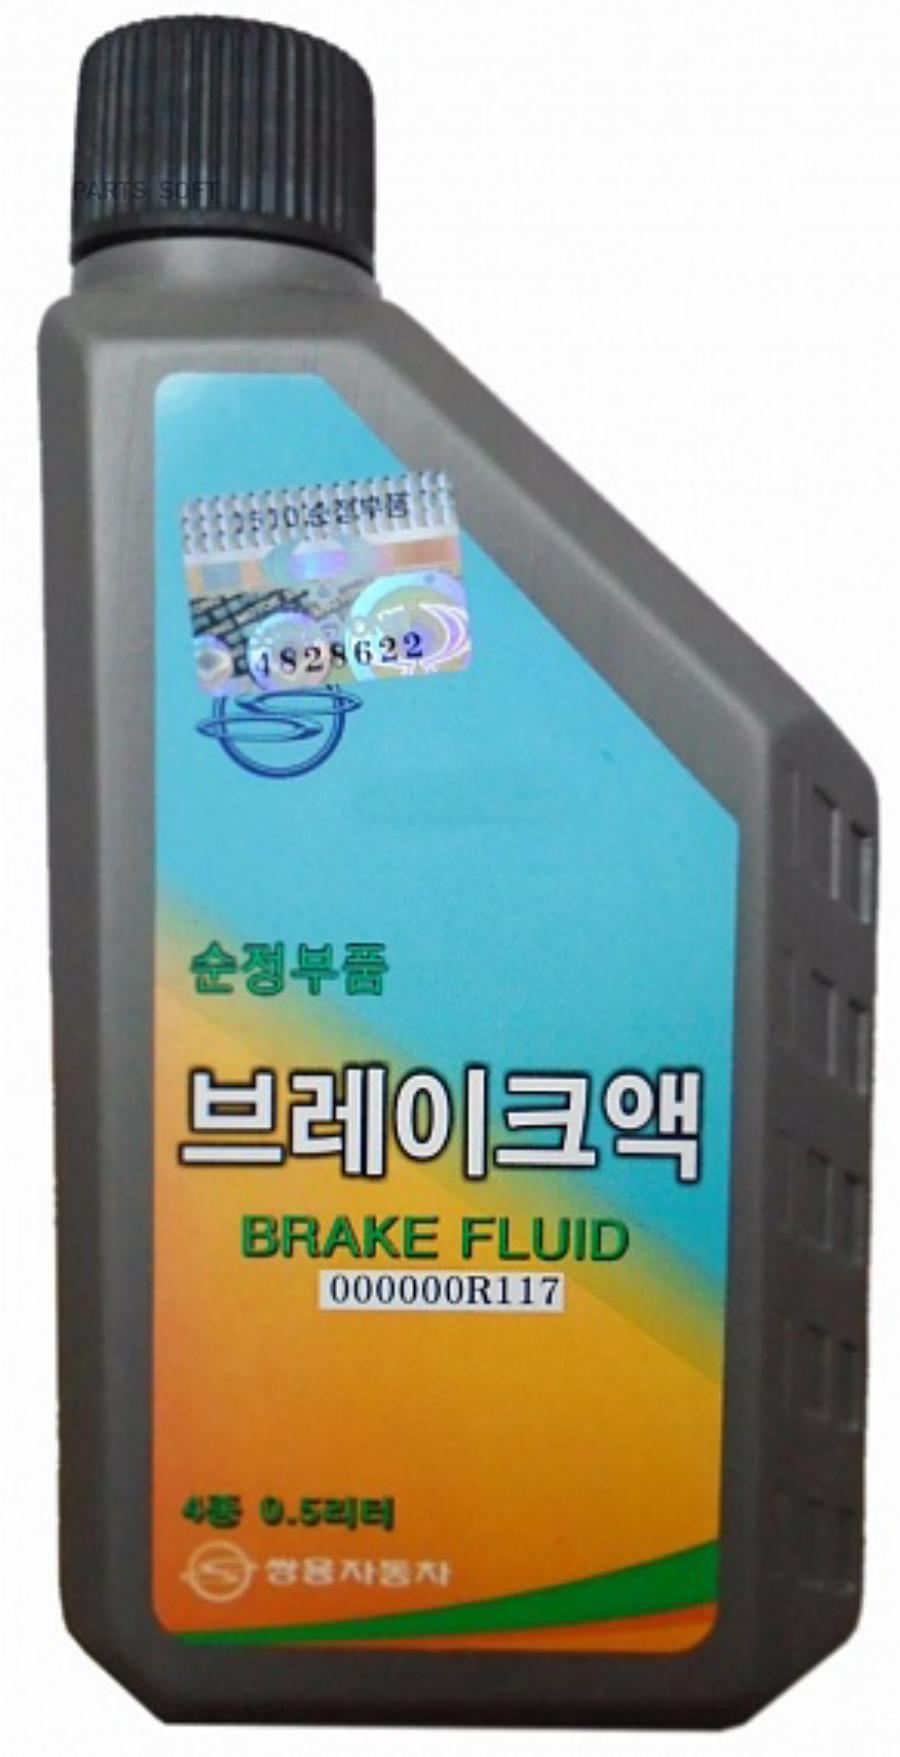 Тормозная жидкость SSANGYONG DOT-4 Brake Fluid